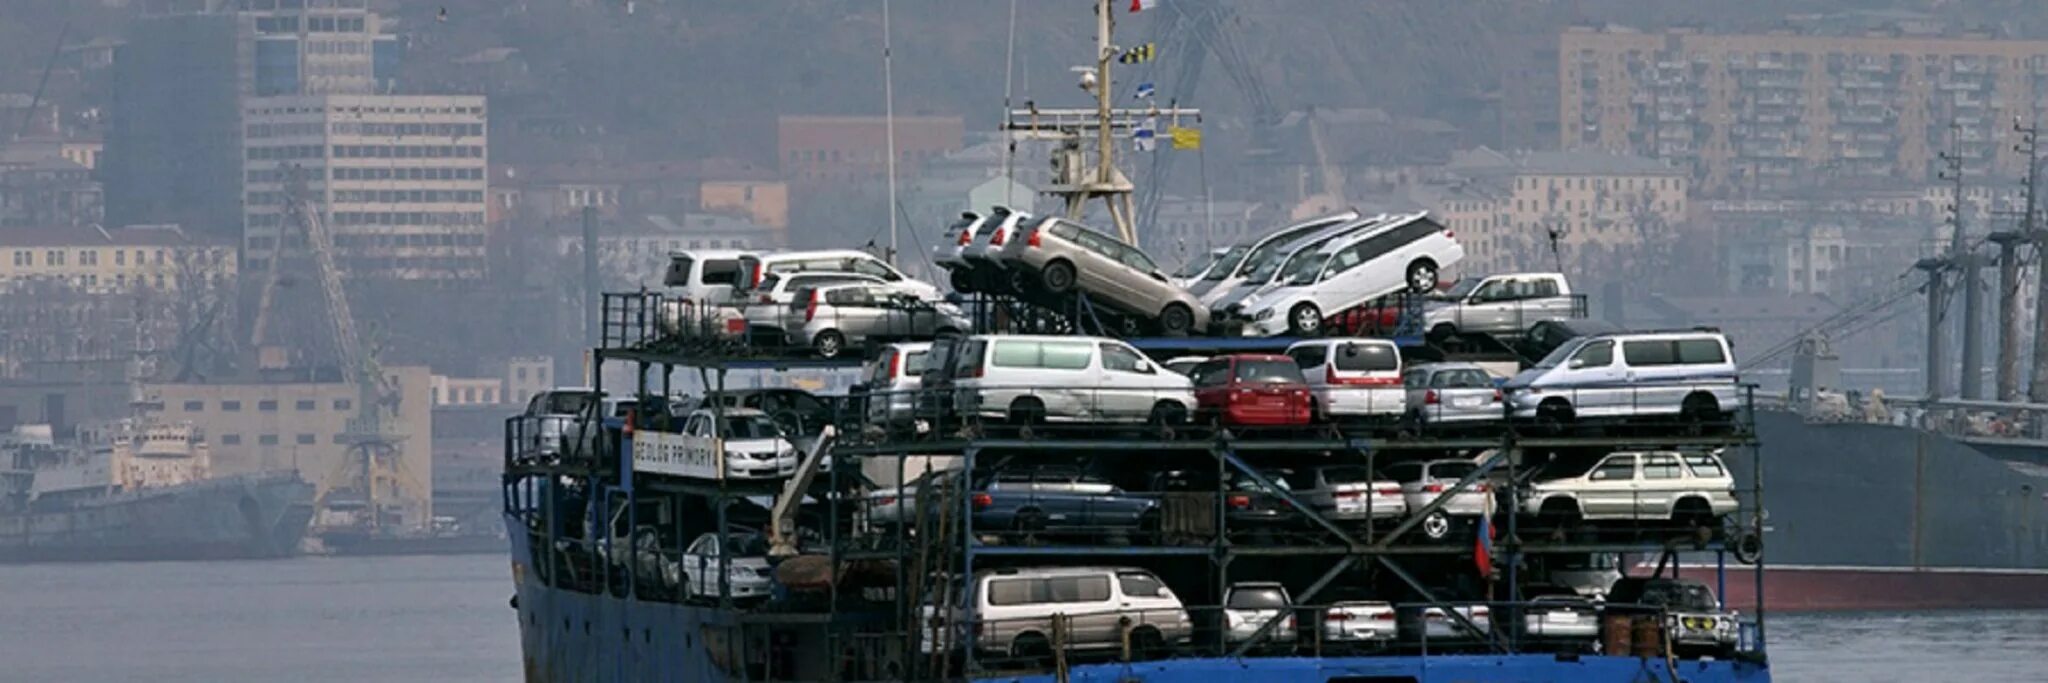 Под заказ авто из японии во владивостоке. Машины в порту Владивостока. Корабль с автомобилями. Автомобили в порту Японии. Паром с автомобилями.